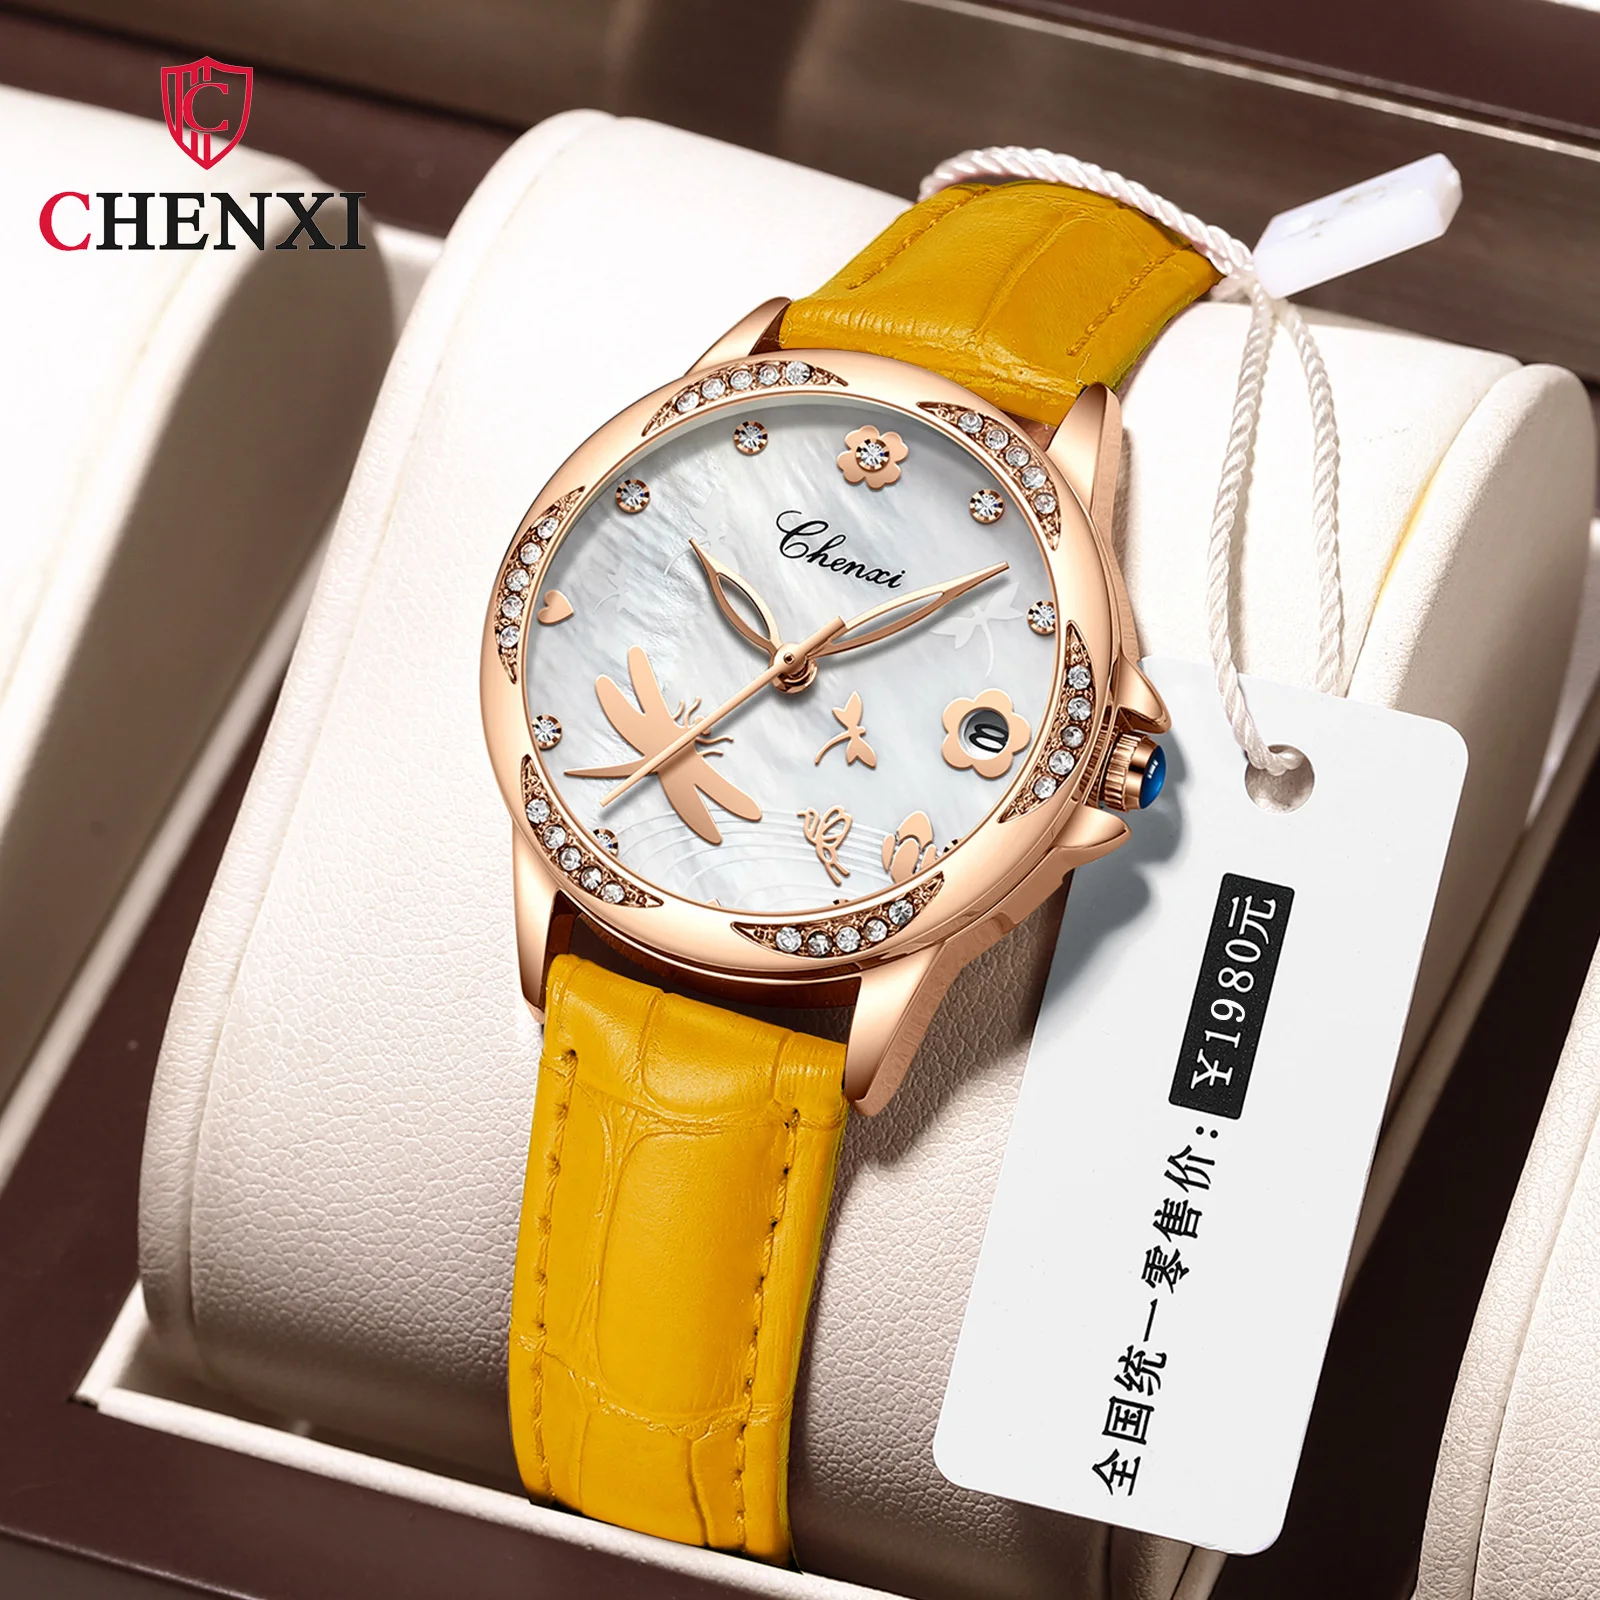 Chenxi 312 Quente Novas Mulheres Da Moda Impermeável Relógios De Quartzo, Diamantes Calendário Do Ouro De Rosa Do Relógio Relogios Feminino